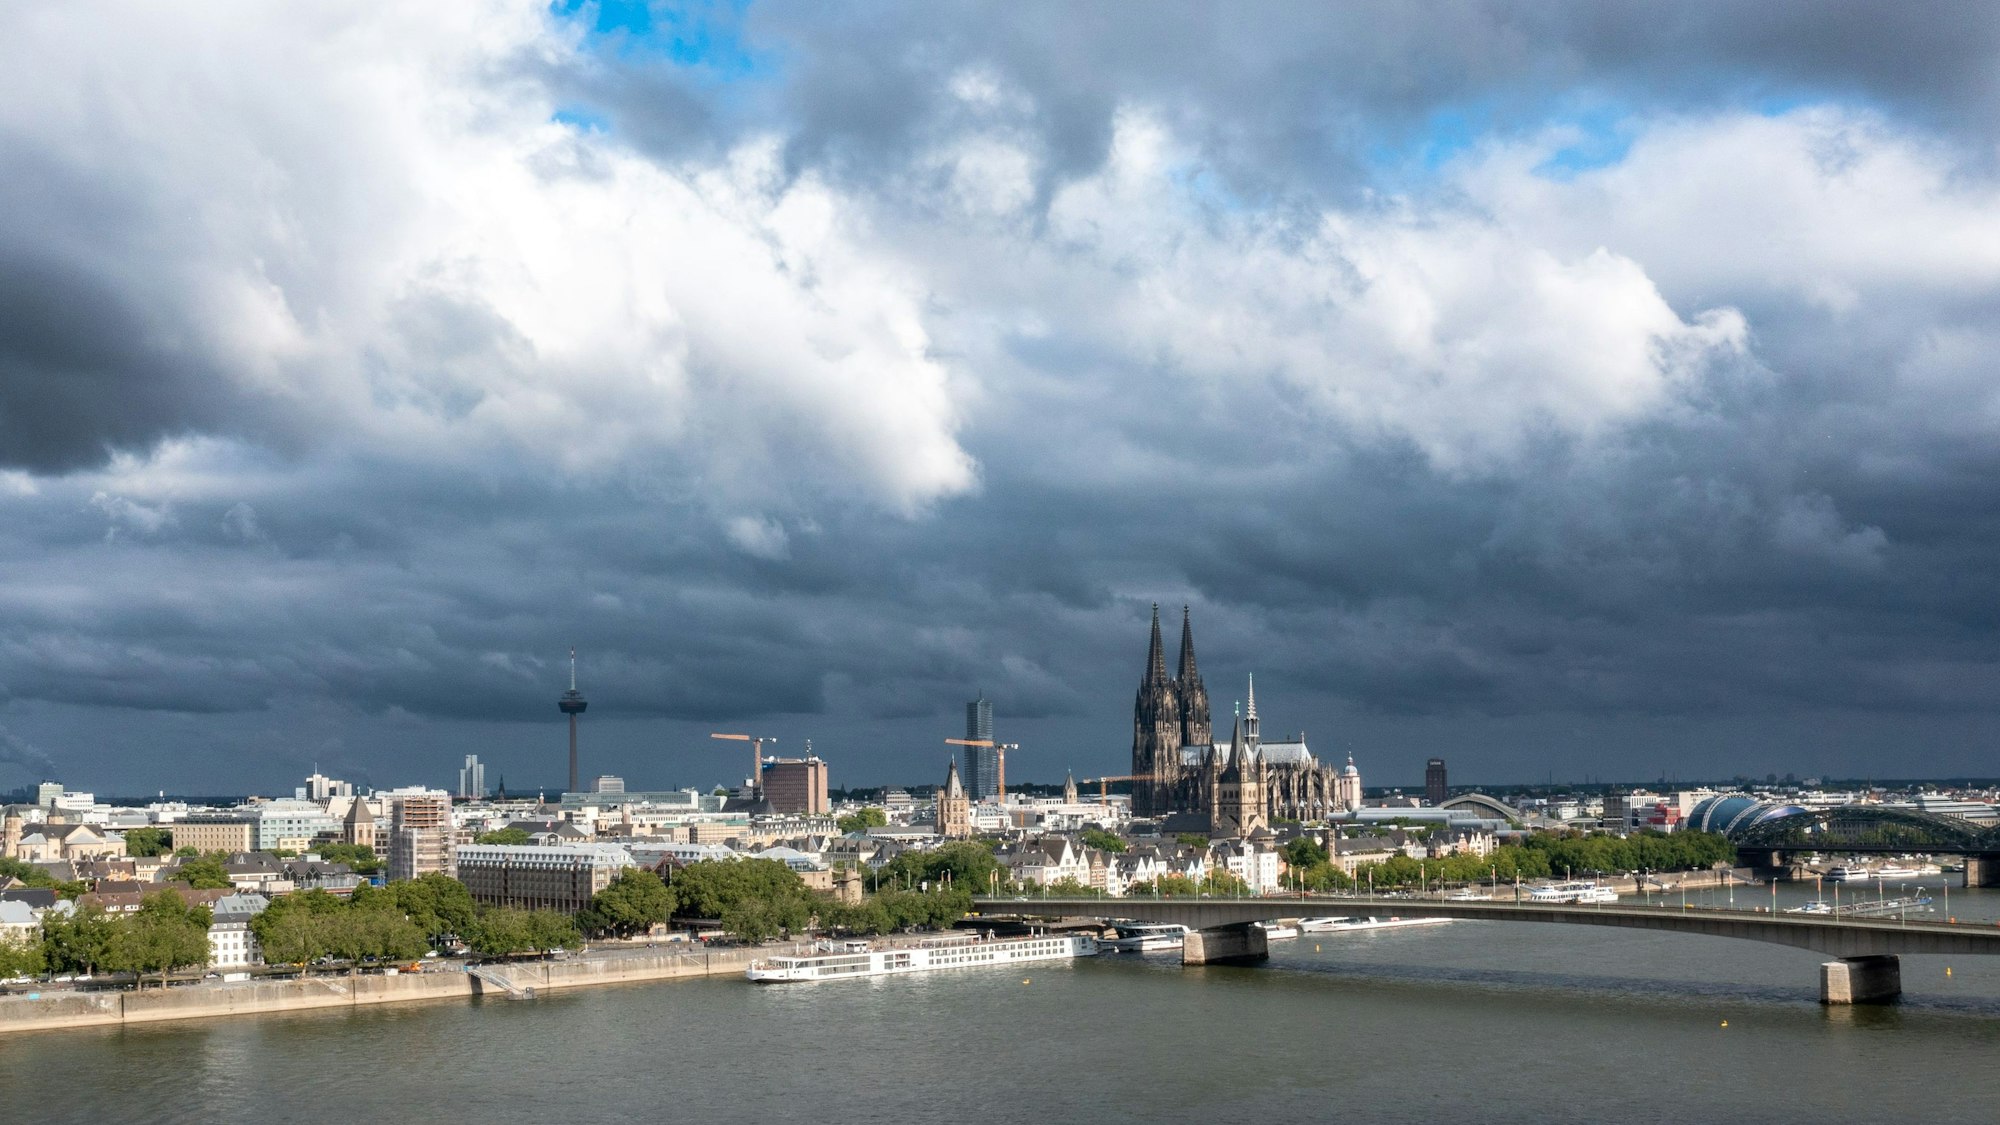 10.07.2022, Köln: Das Stadtpanorama mit Rhein und Dom. Am Sonntagmorgen scheint noch die Sonne, aber Wolken ziehen schon heran. Luftaufnahme mit Drohne. Foto: Uwe Weiser